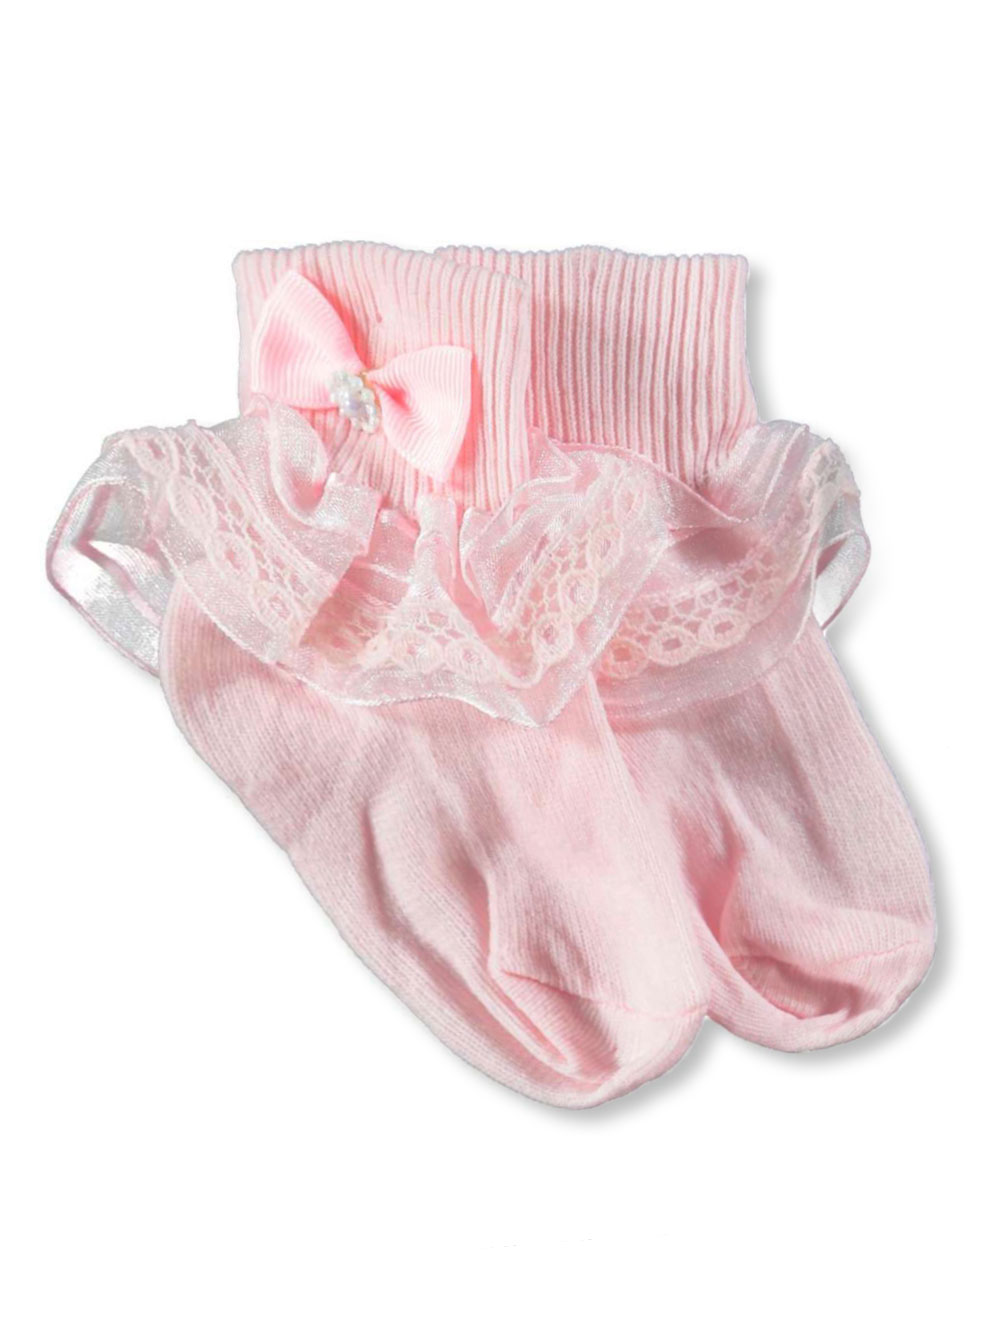 Girls Pink and White Underwear